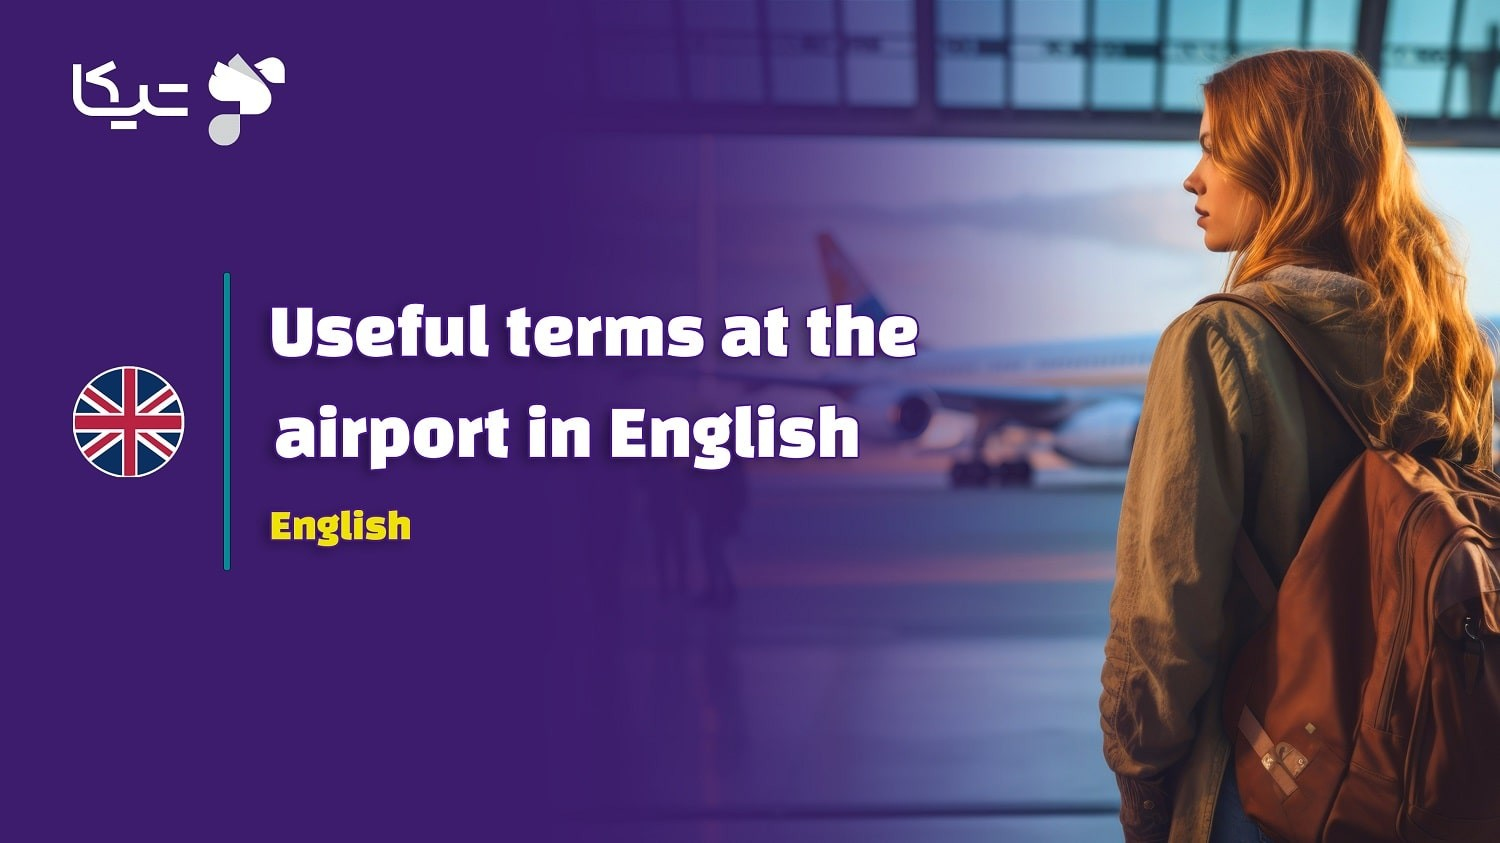 اصطلاحات کاربردی در فرودگاه به زبان انگلیسی